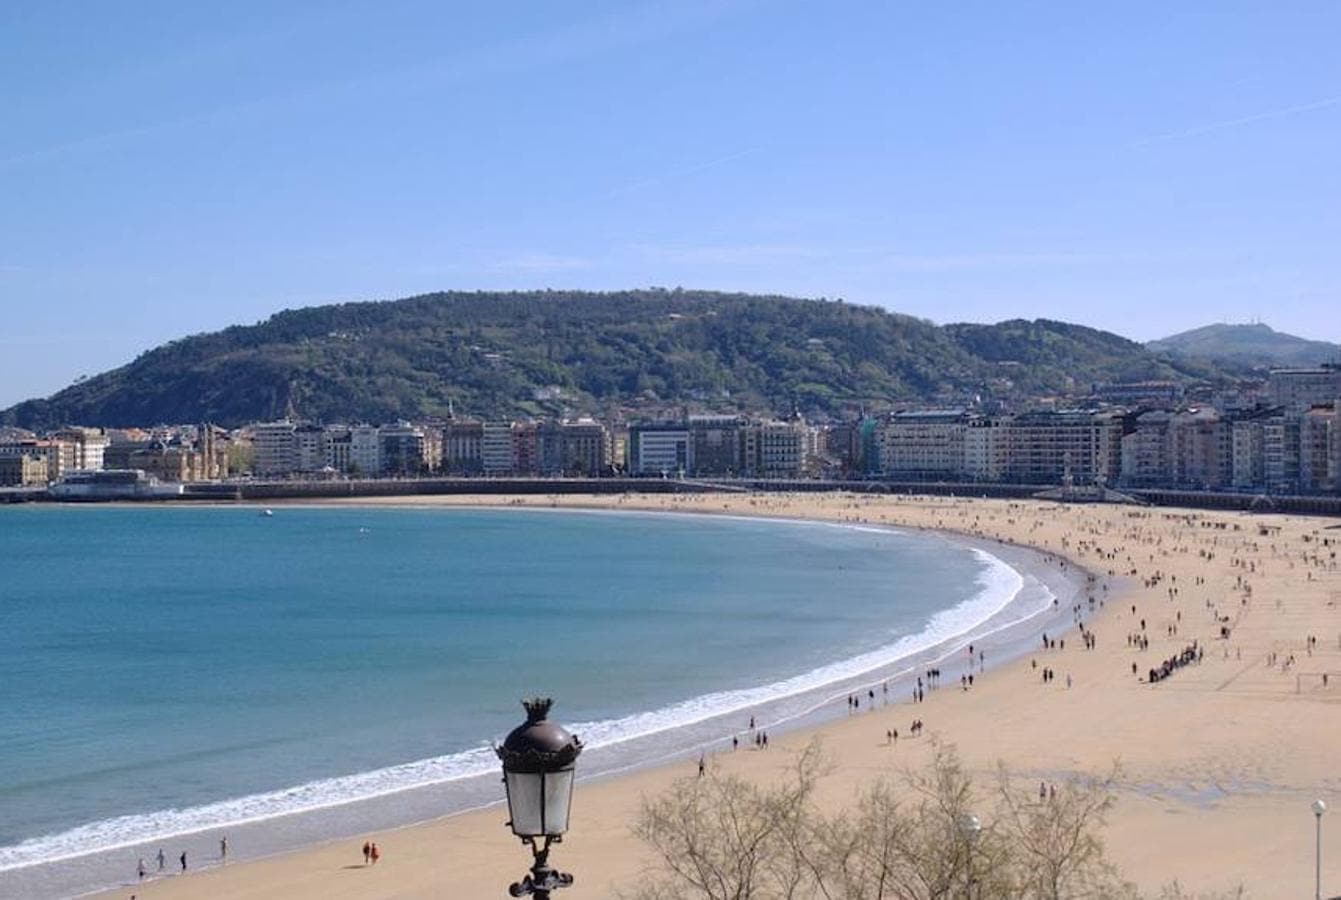 En la sexta posición, con 1.500 metros de arena blanca, se ha situado una playa española, la Playa de La Concha, localizada en la costa de San Sebastián (España). 